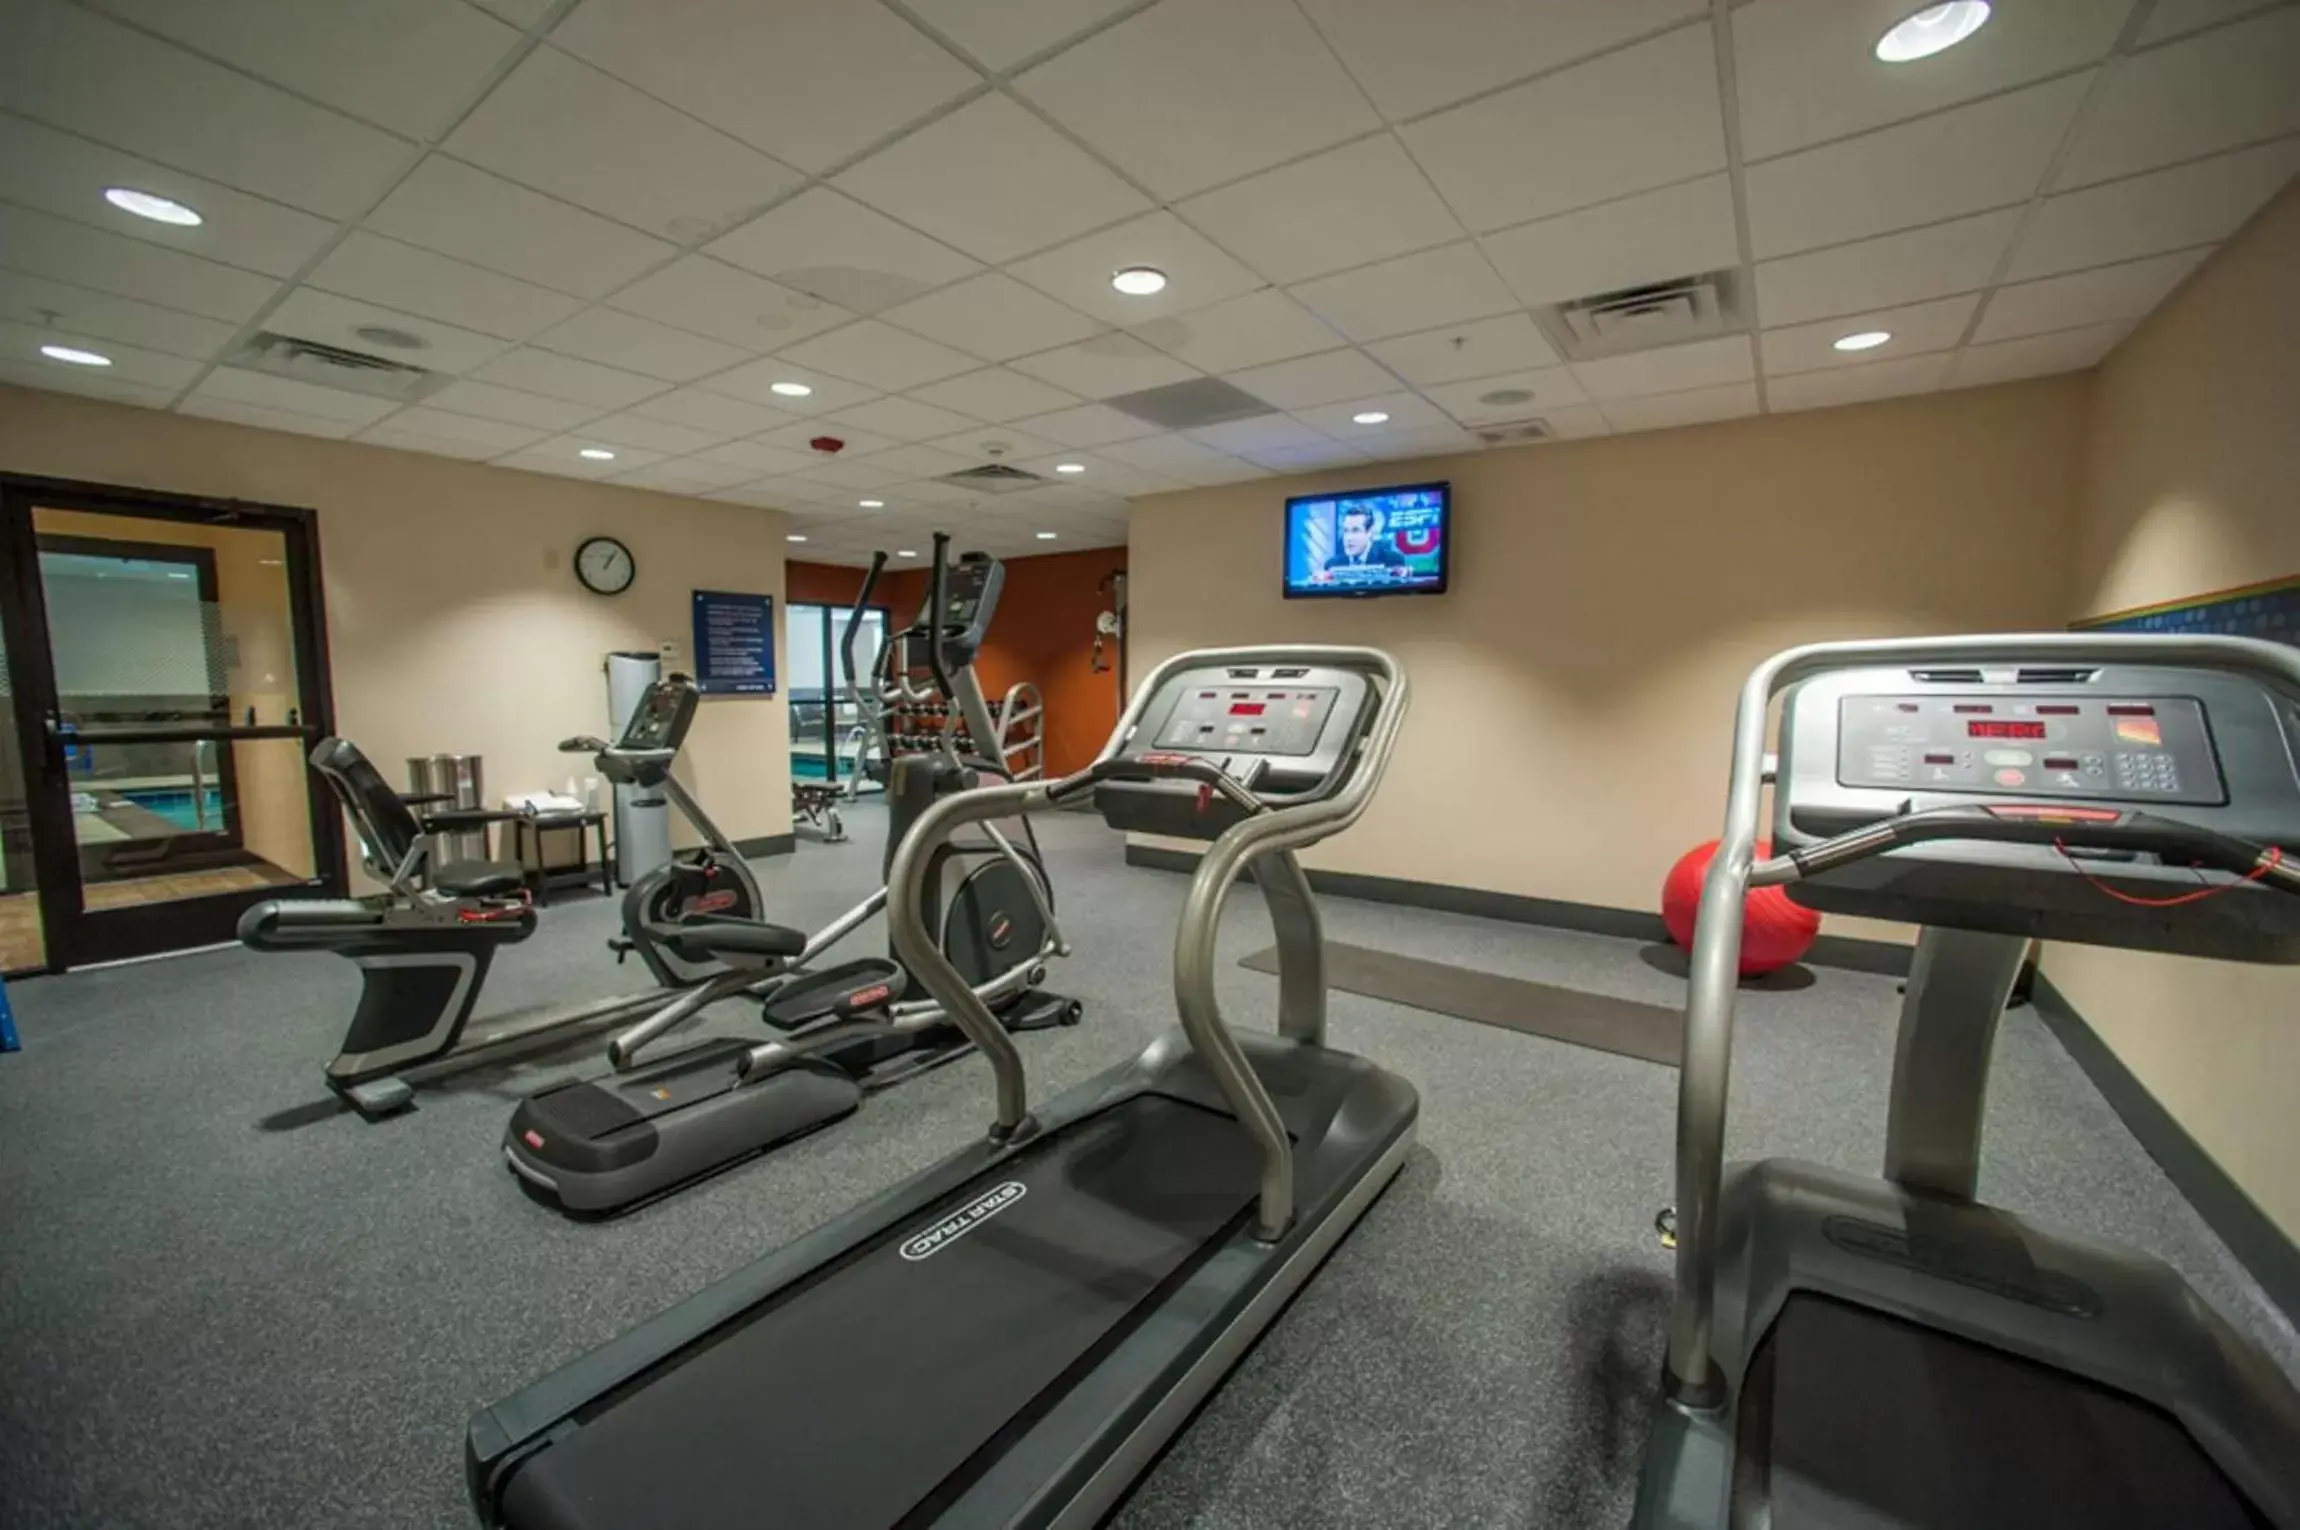 Fitness centre/facilities, Fitness Center/Facilities in Hampton Inn Fort Morgan